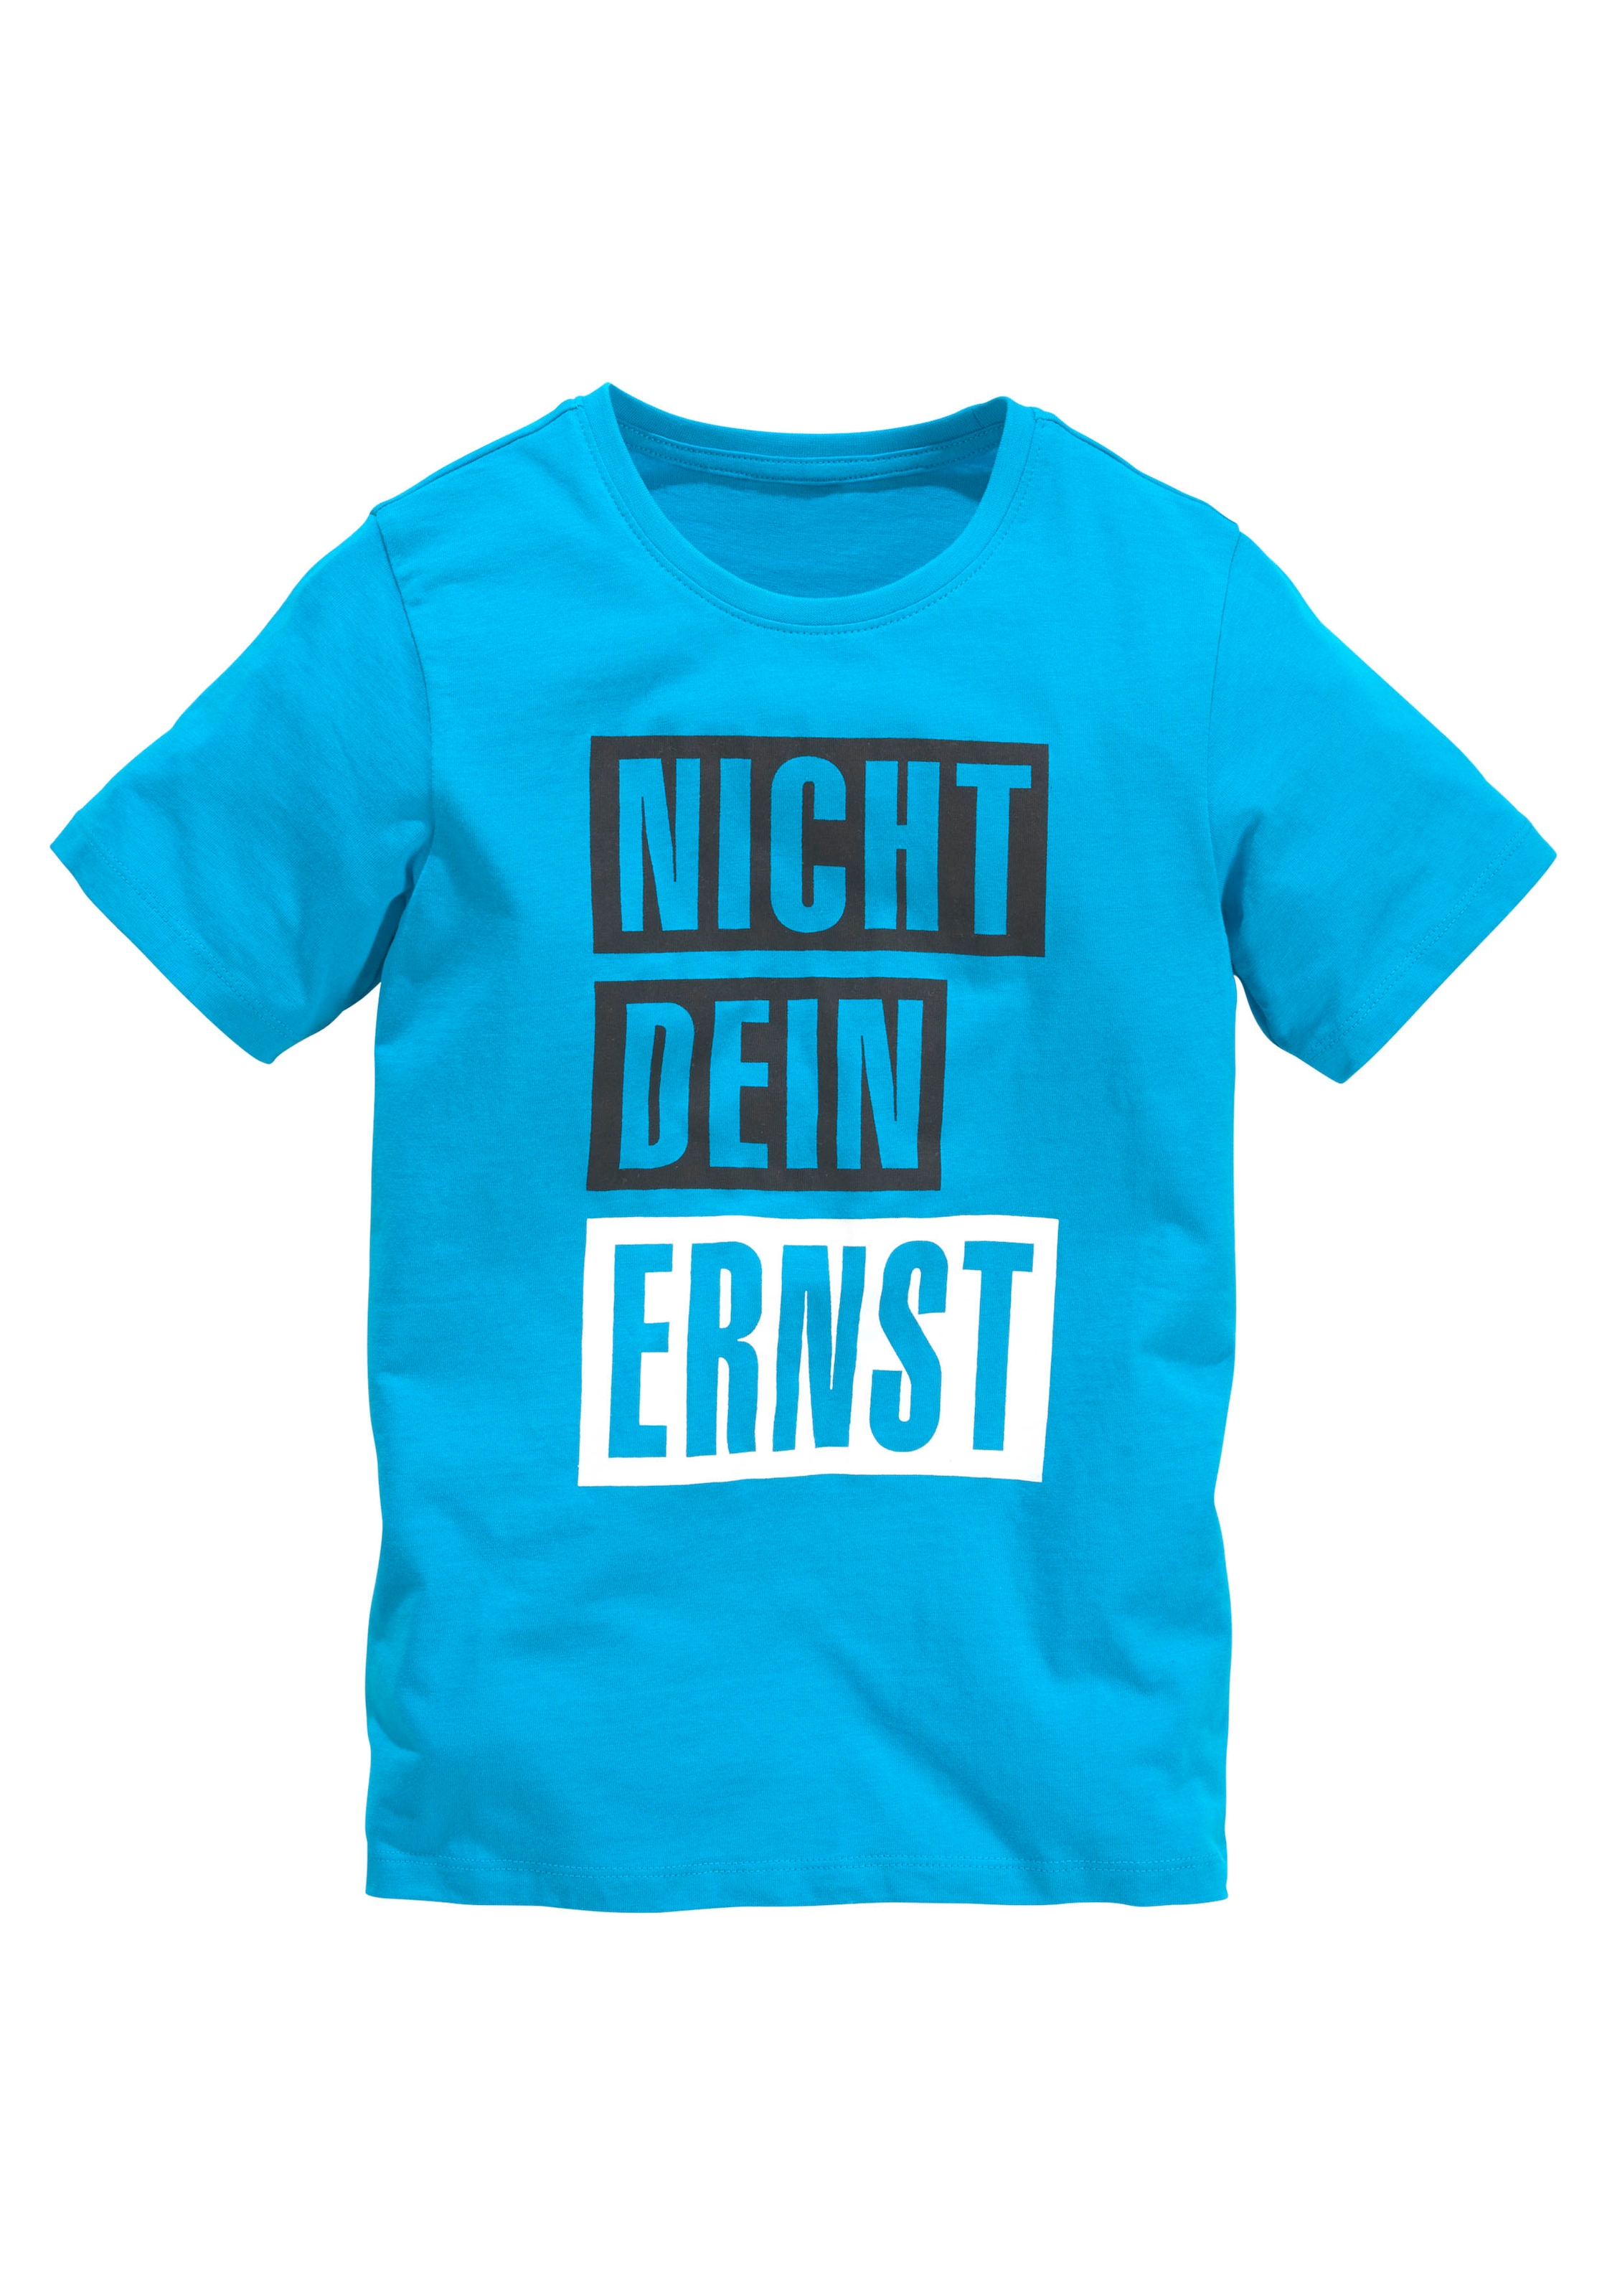 Statement-Shirts online kaufen | Österreich OTTO